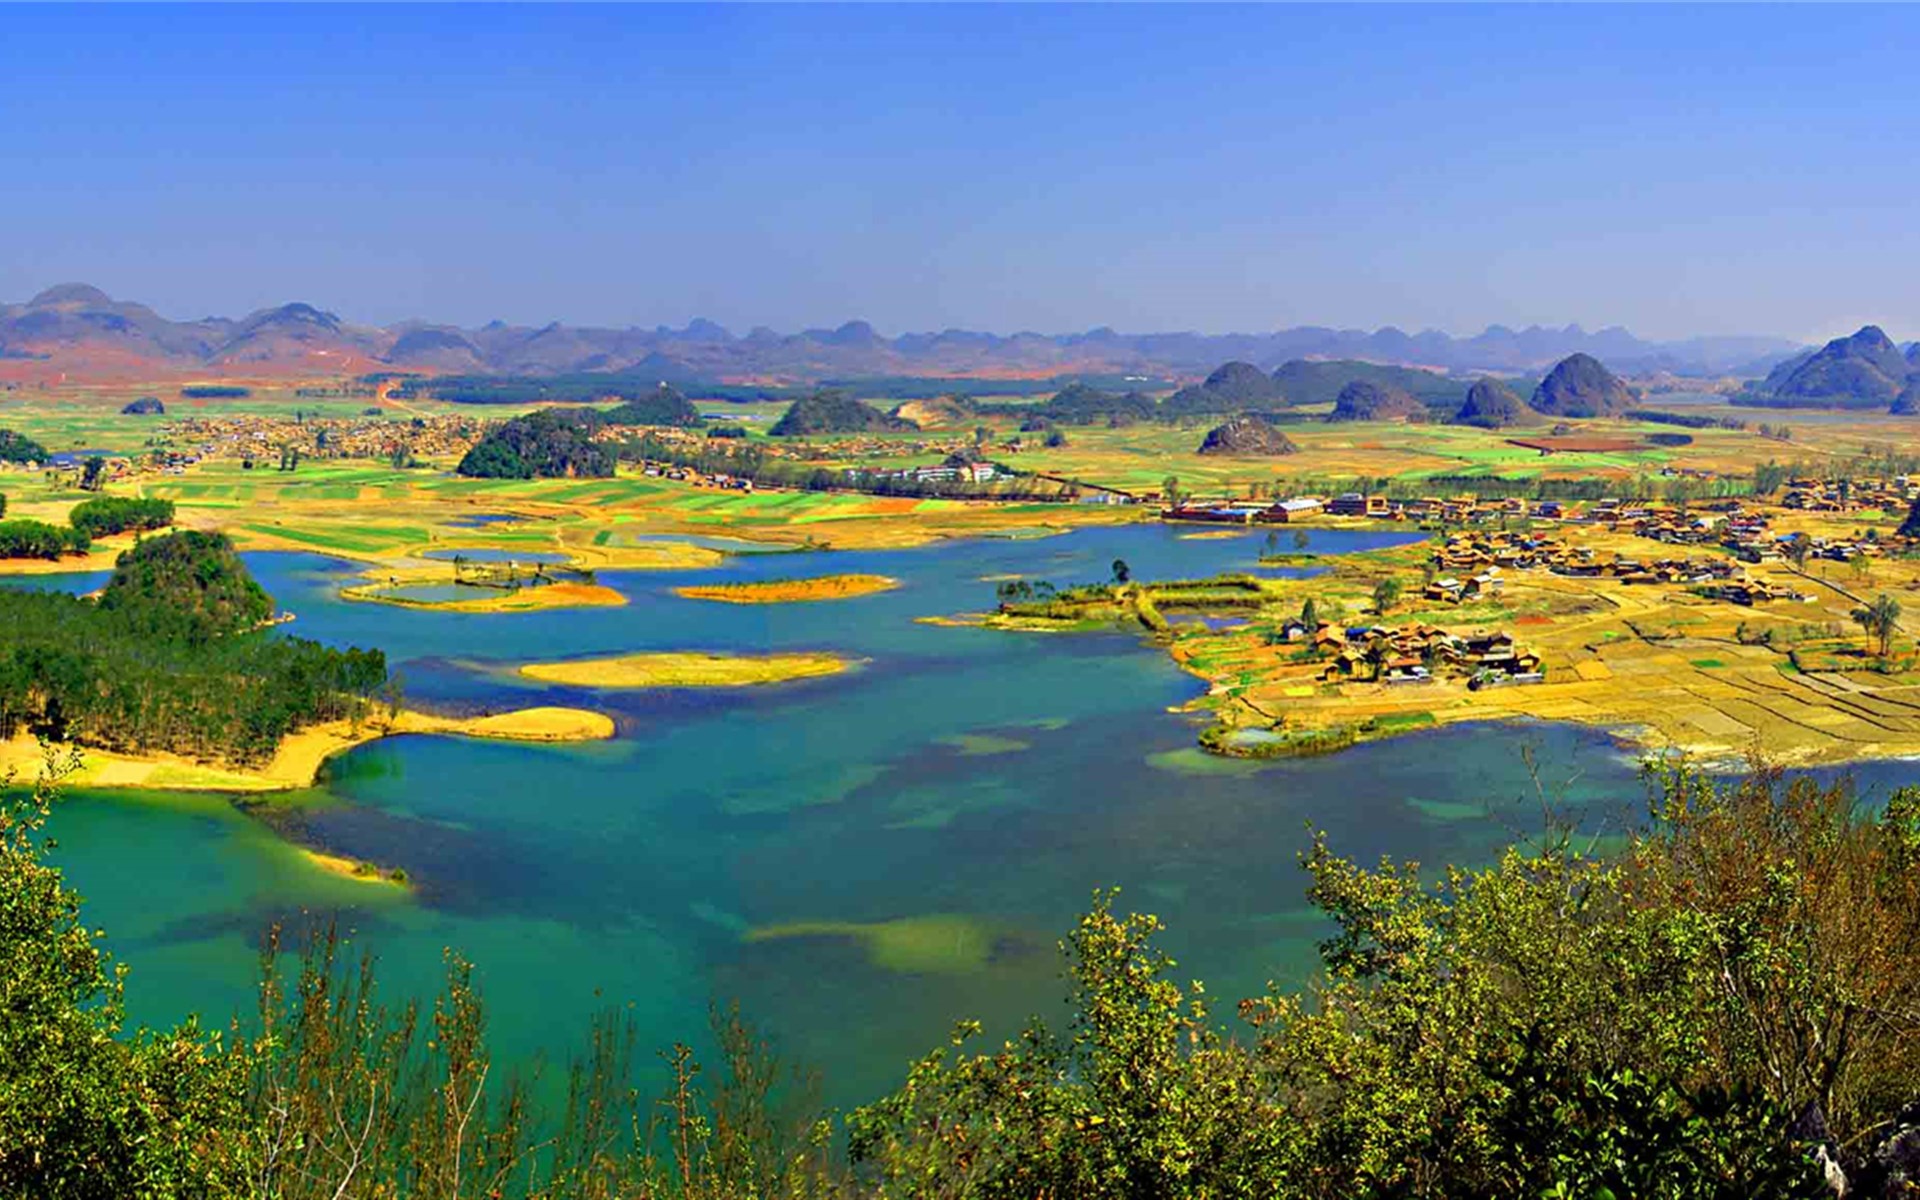 位于中国西南边陲,拥有悠久的历史文化,以美丽,神奇的自然风光而著称